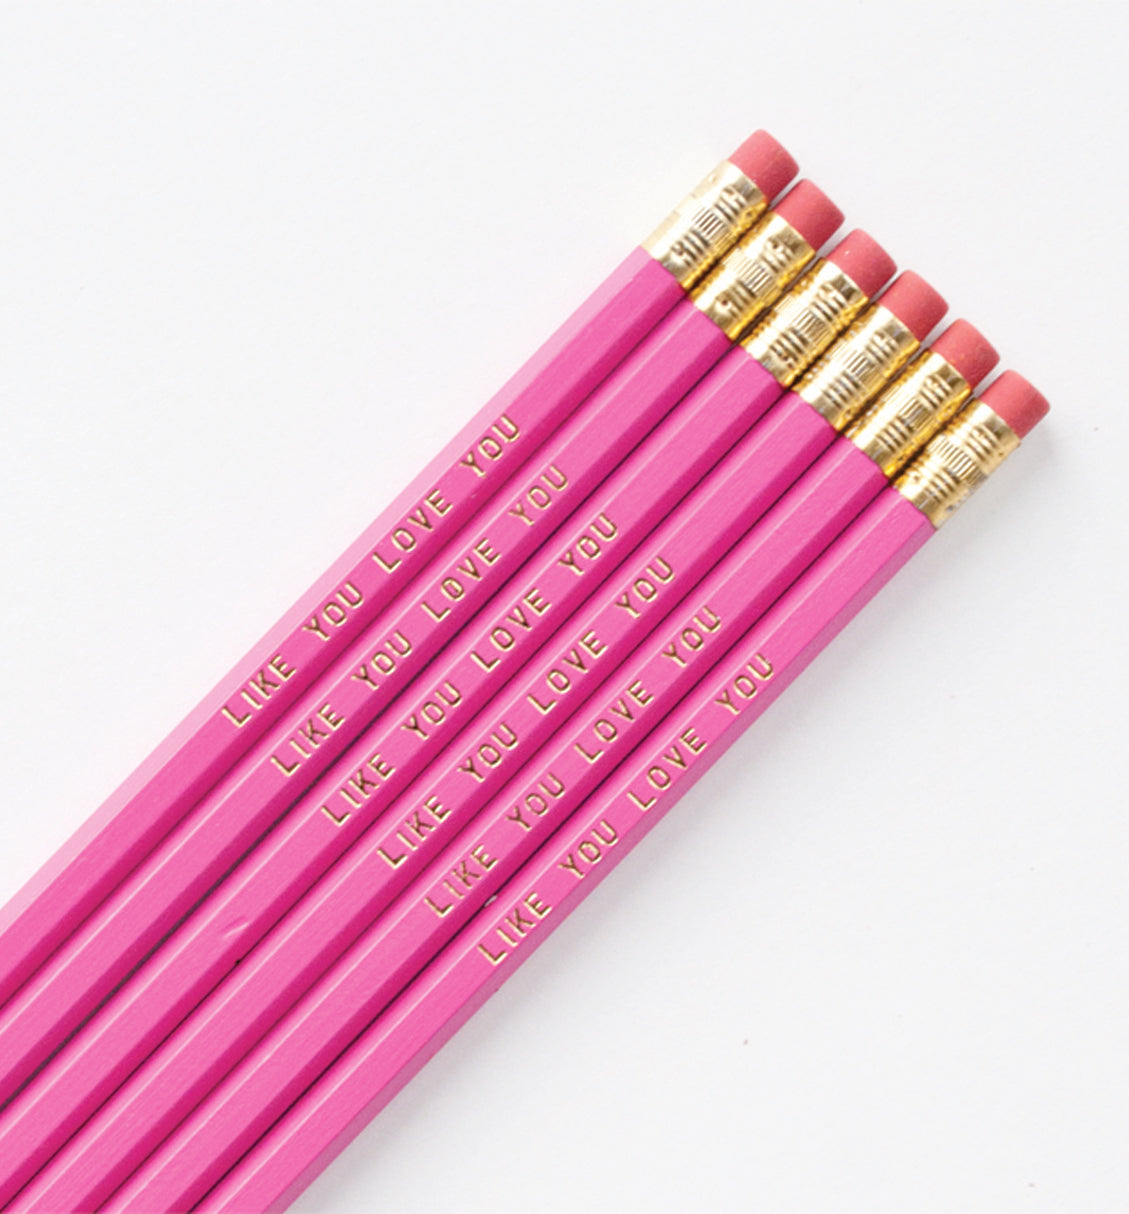 Like You Love You pencil set